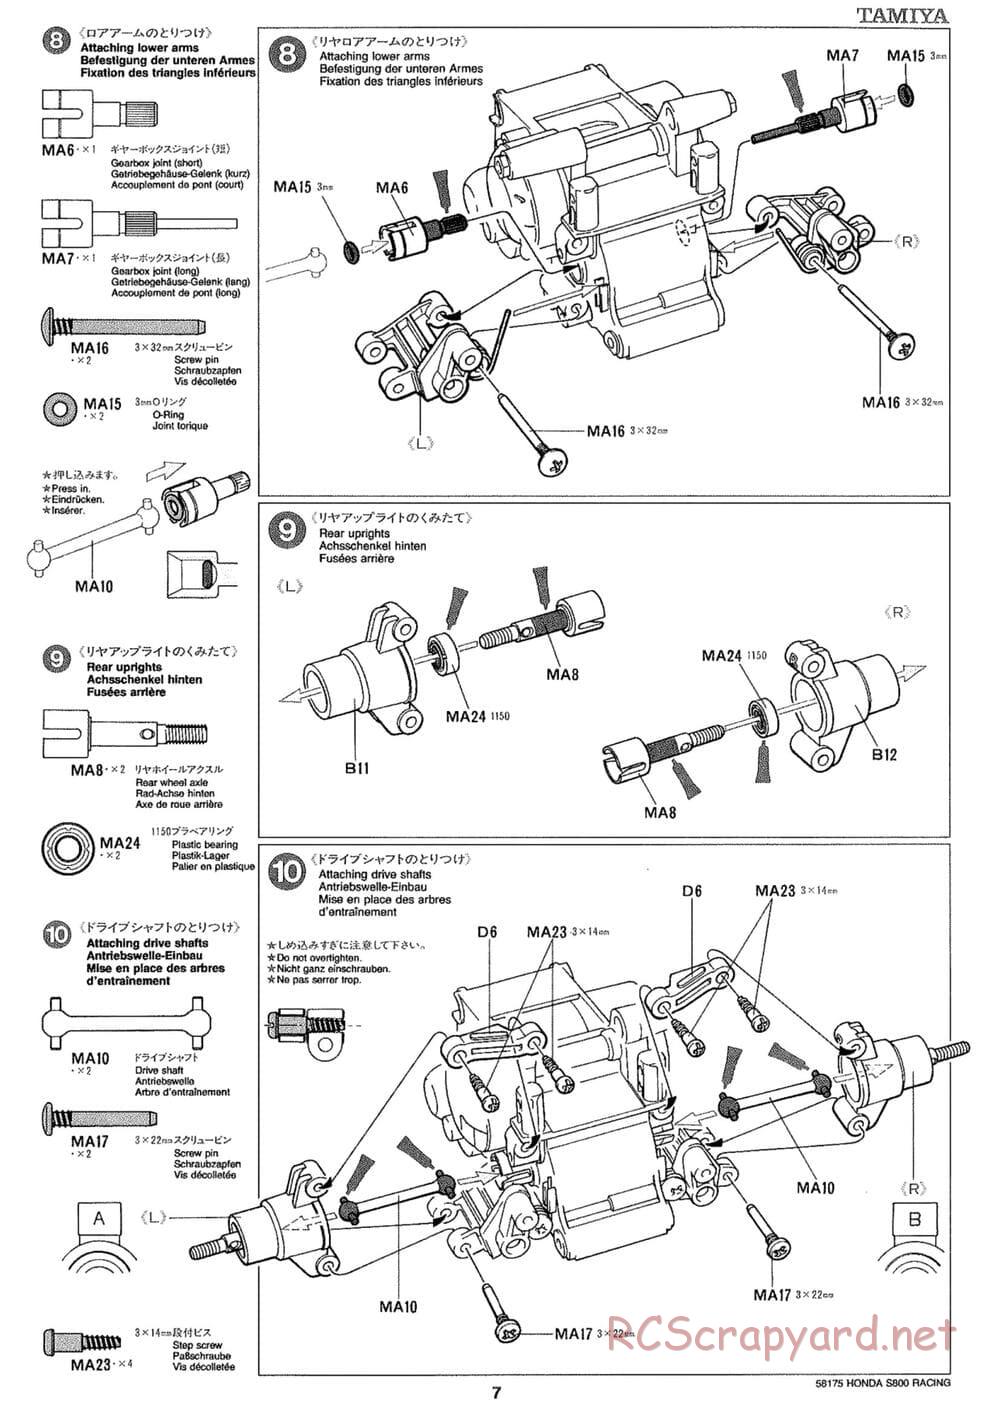 Tamiya - Honda S800 Racing - M02 Chassis - Manual - Page 7